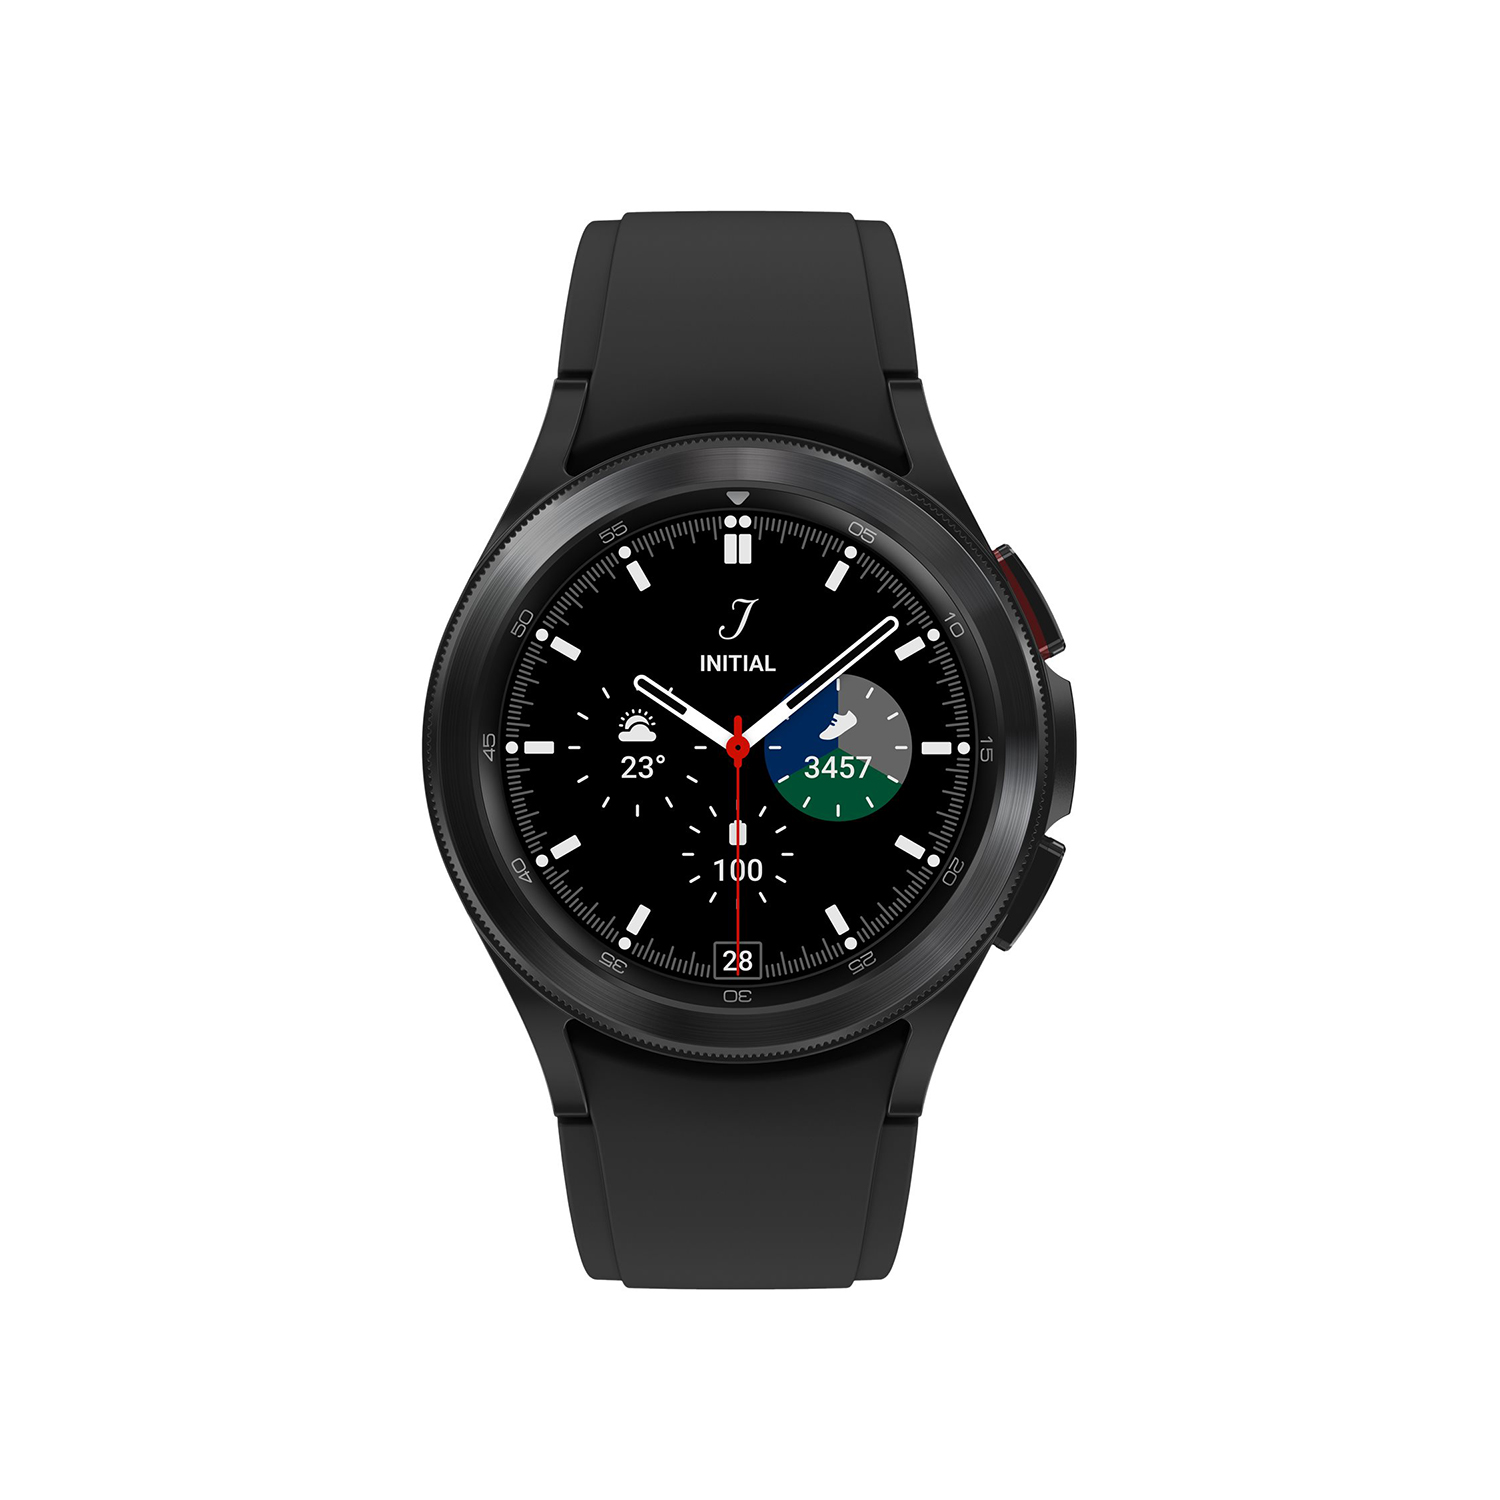 Samsung Galaxy Watch 4 Classic 42mm Schwarz | LTE-Konnektivit?t | Wassergesch?tzt nach 5 ATM | BIA-Analyse, SpO2-Wert, EKG-und Blutdruckmessung von Samsung